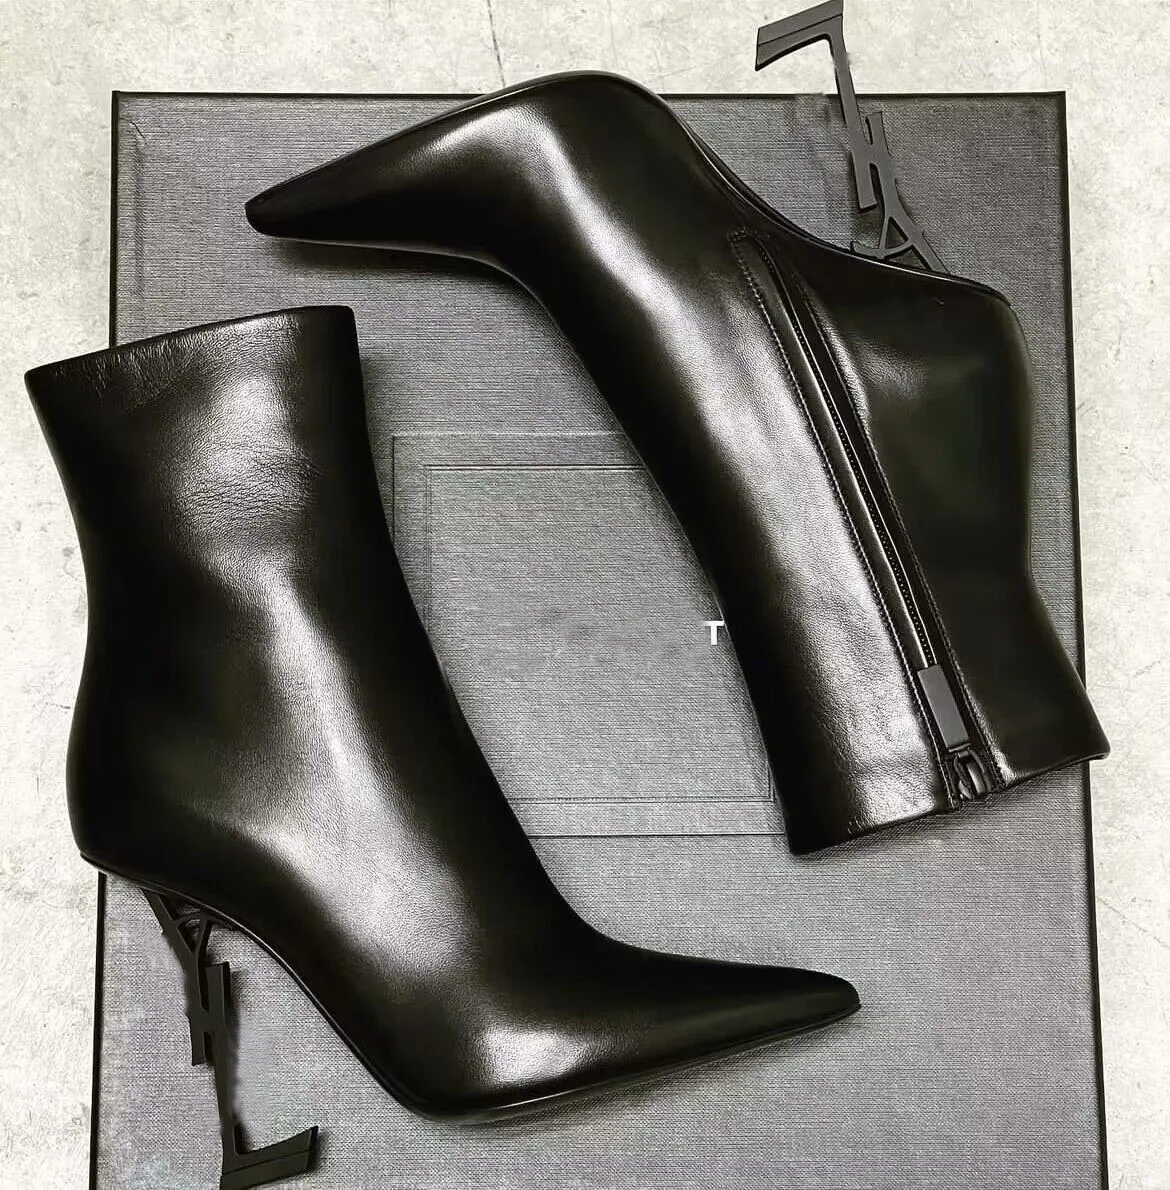 العلامة التجارية الشتوية الفاخرة أوبيوم أحذية الكاحل النساء المعادن ستيليتو كعب أسود أبيض العجل الجلود الحذاء الحذاء حفلات الزفاف سيدة EU35-43 مع صندوق